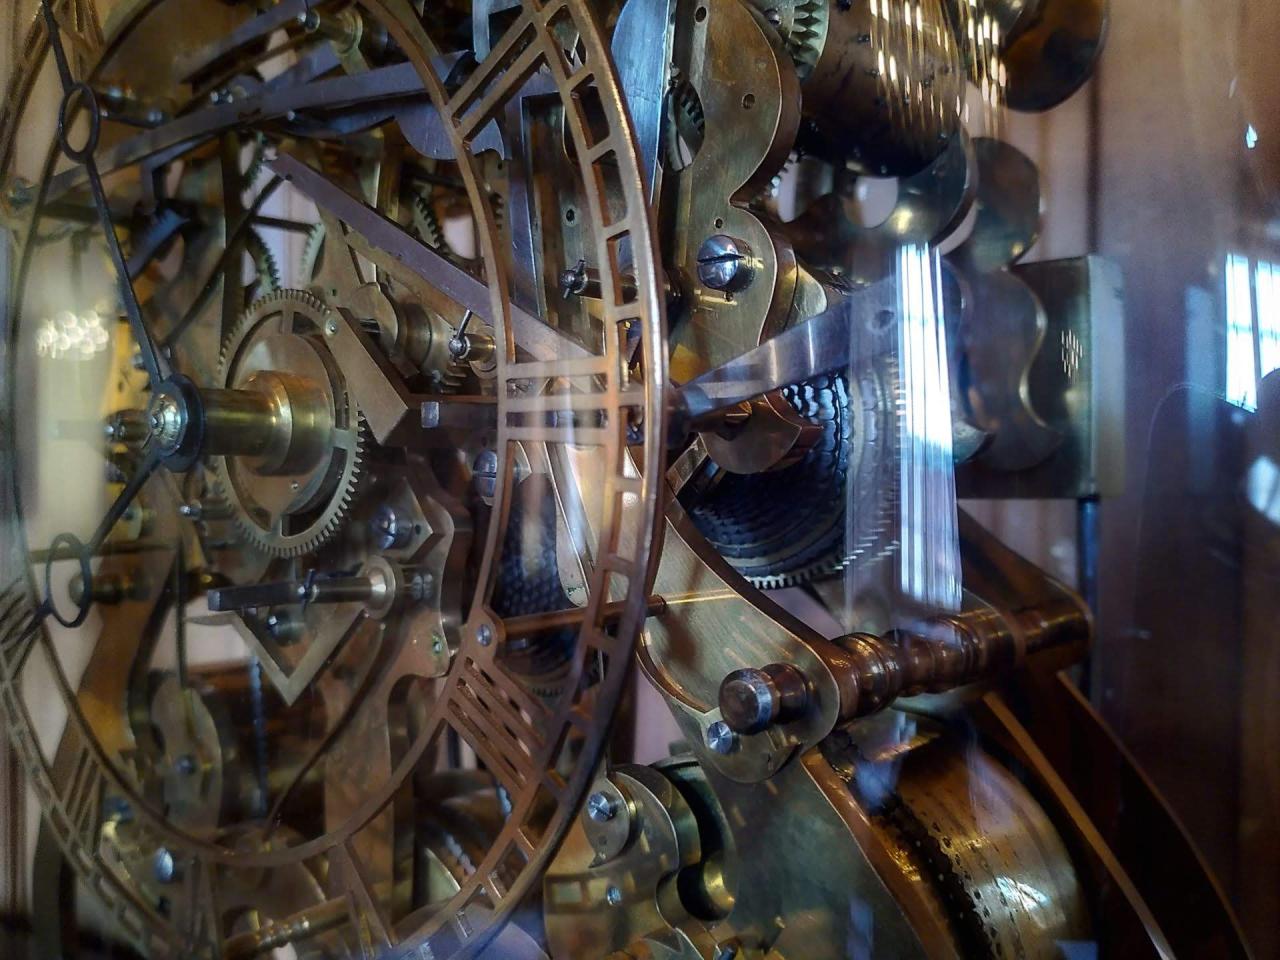 A complicated clock mechanism